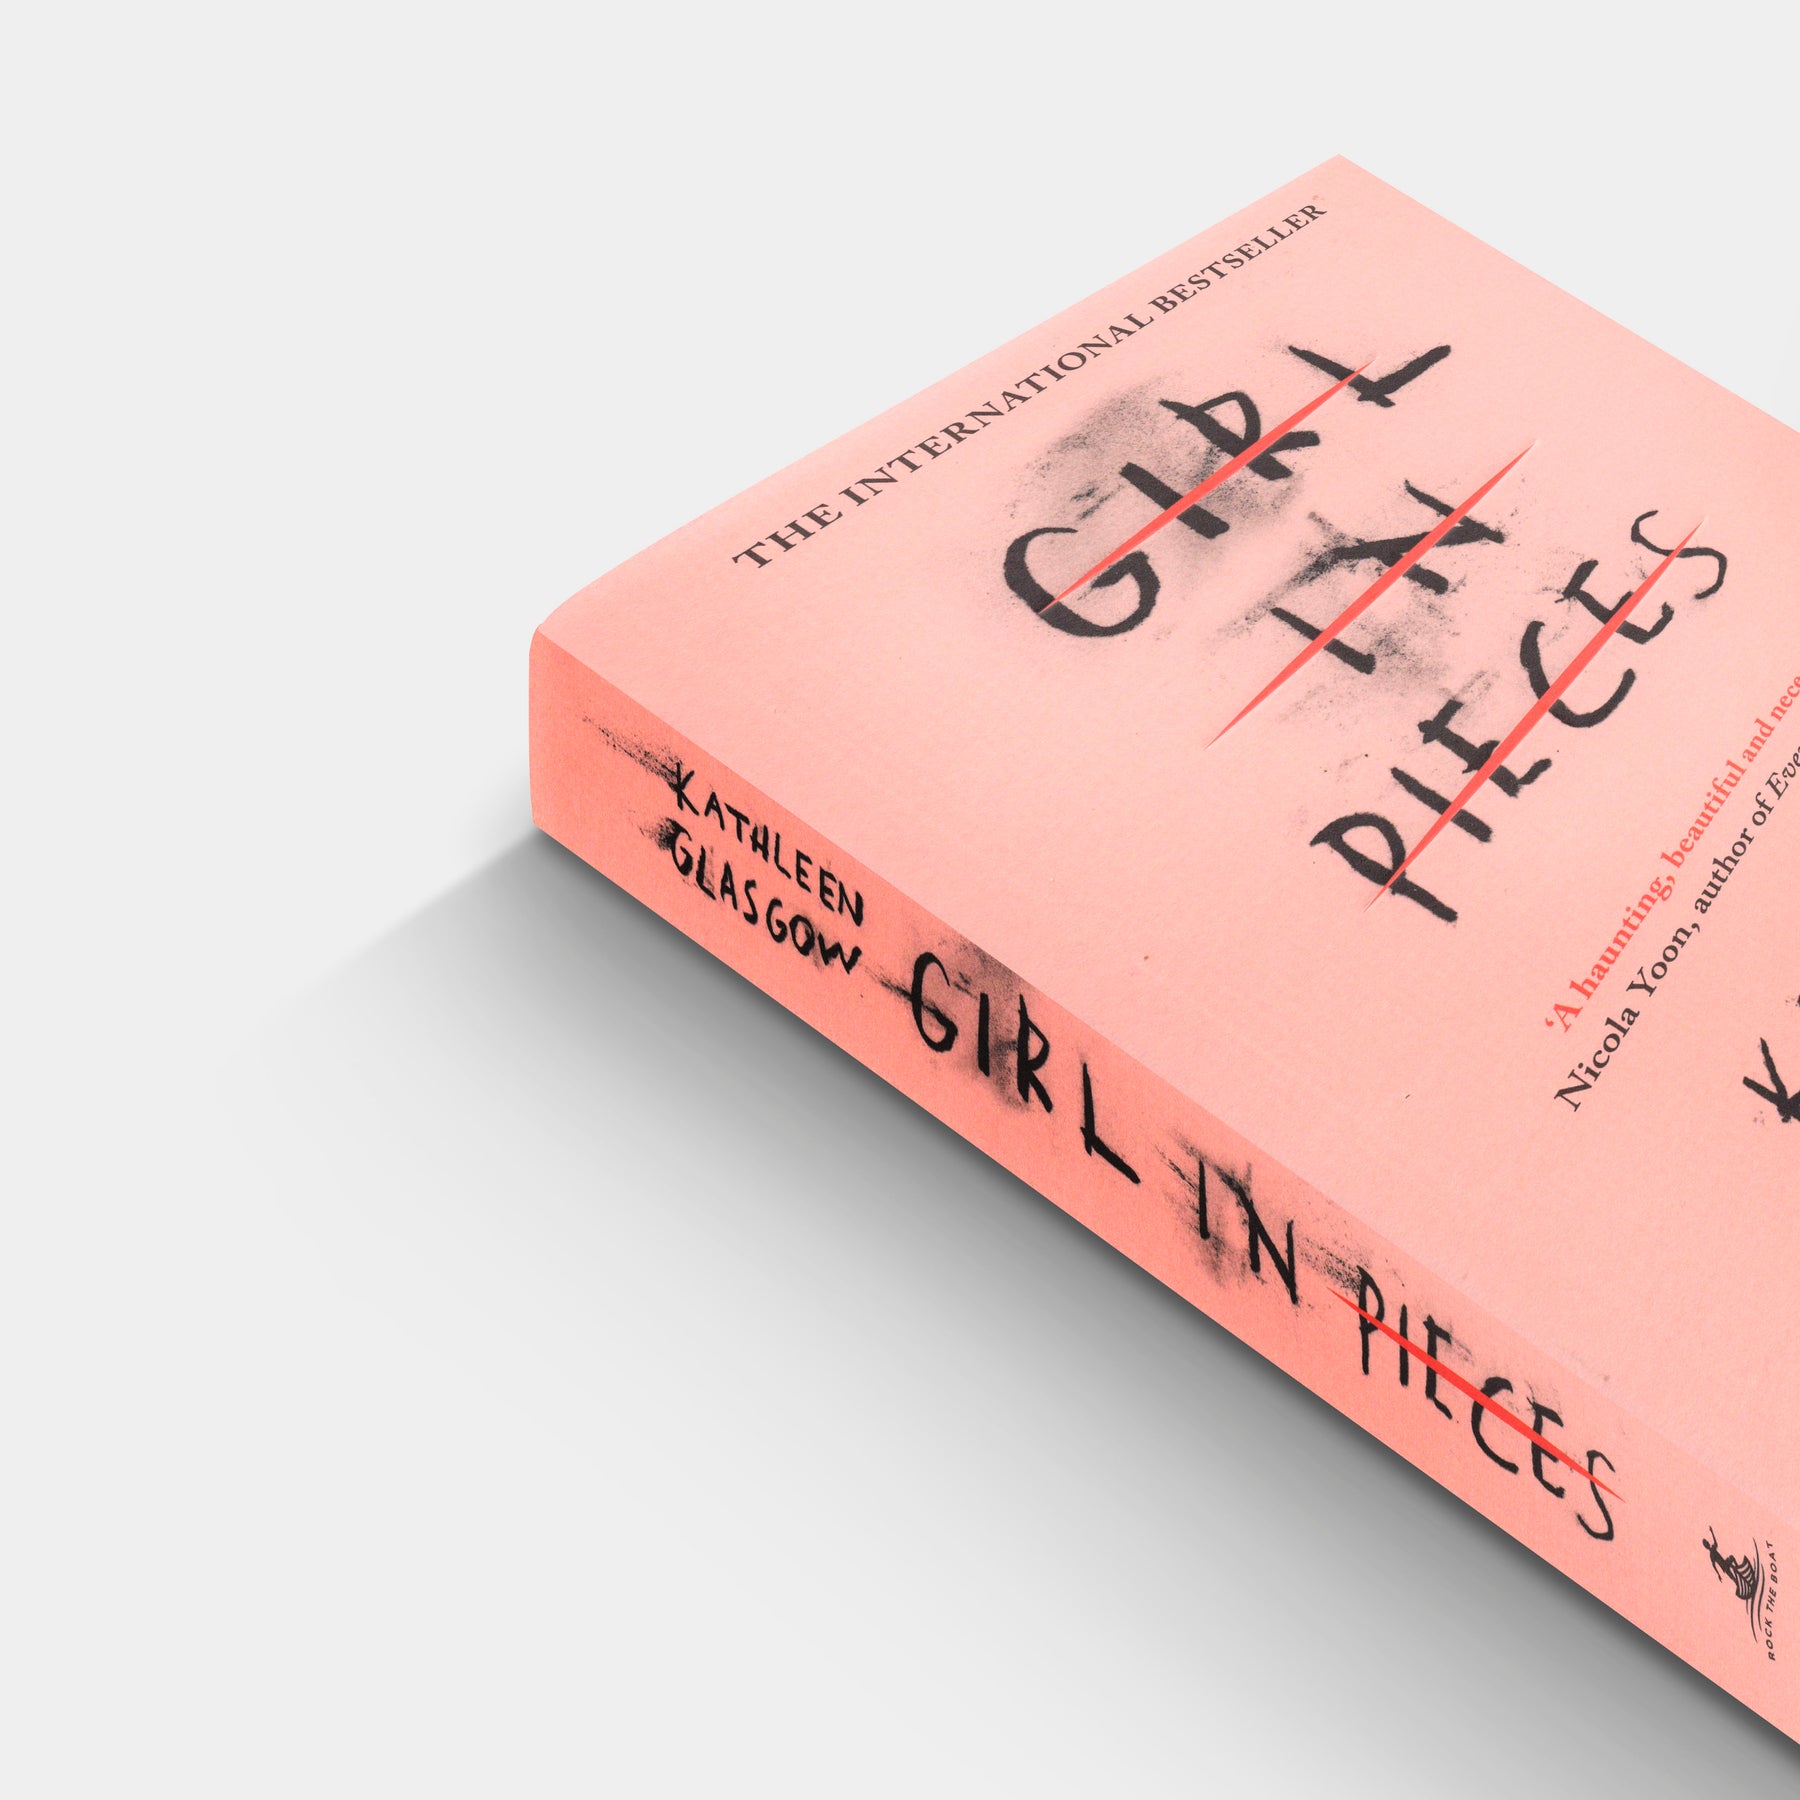 Girl in Pieces – Rare Birds Books